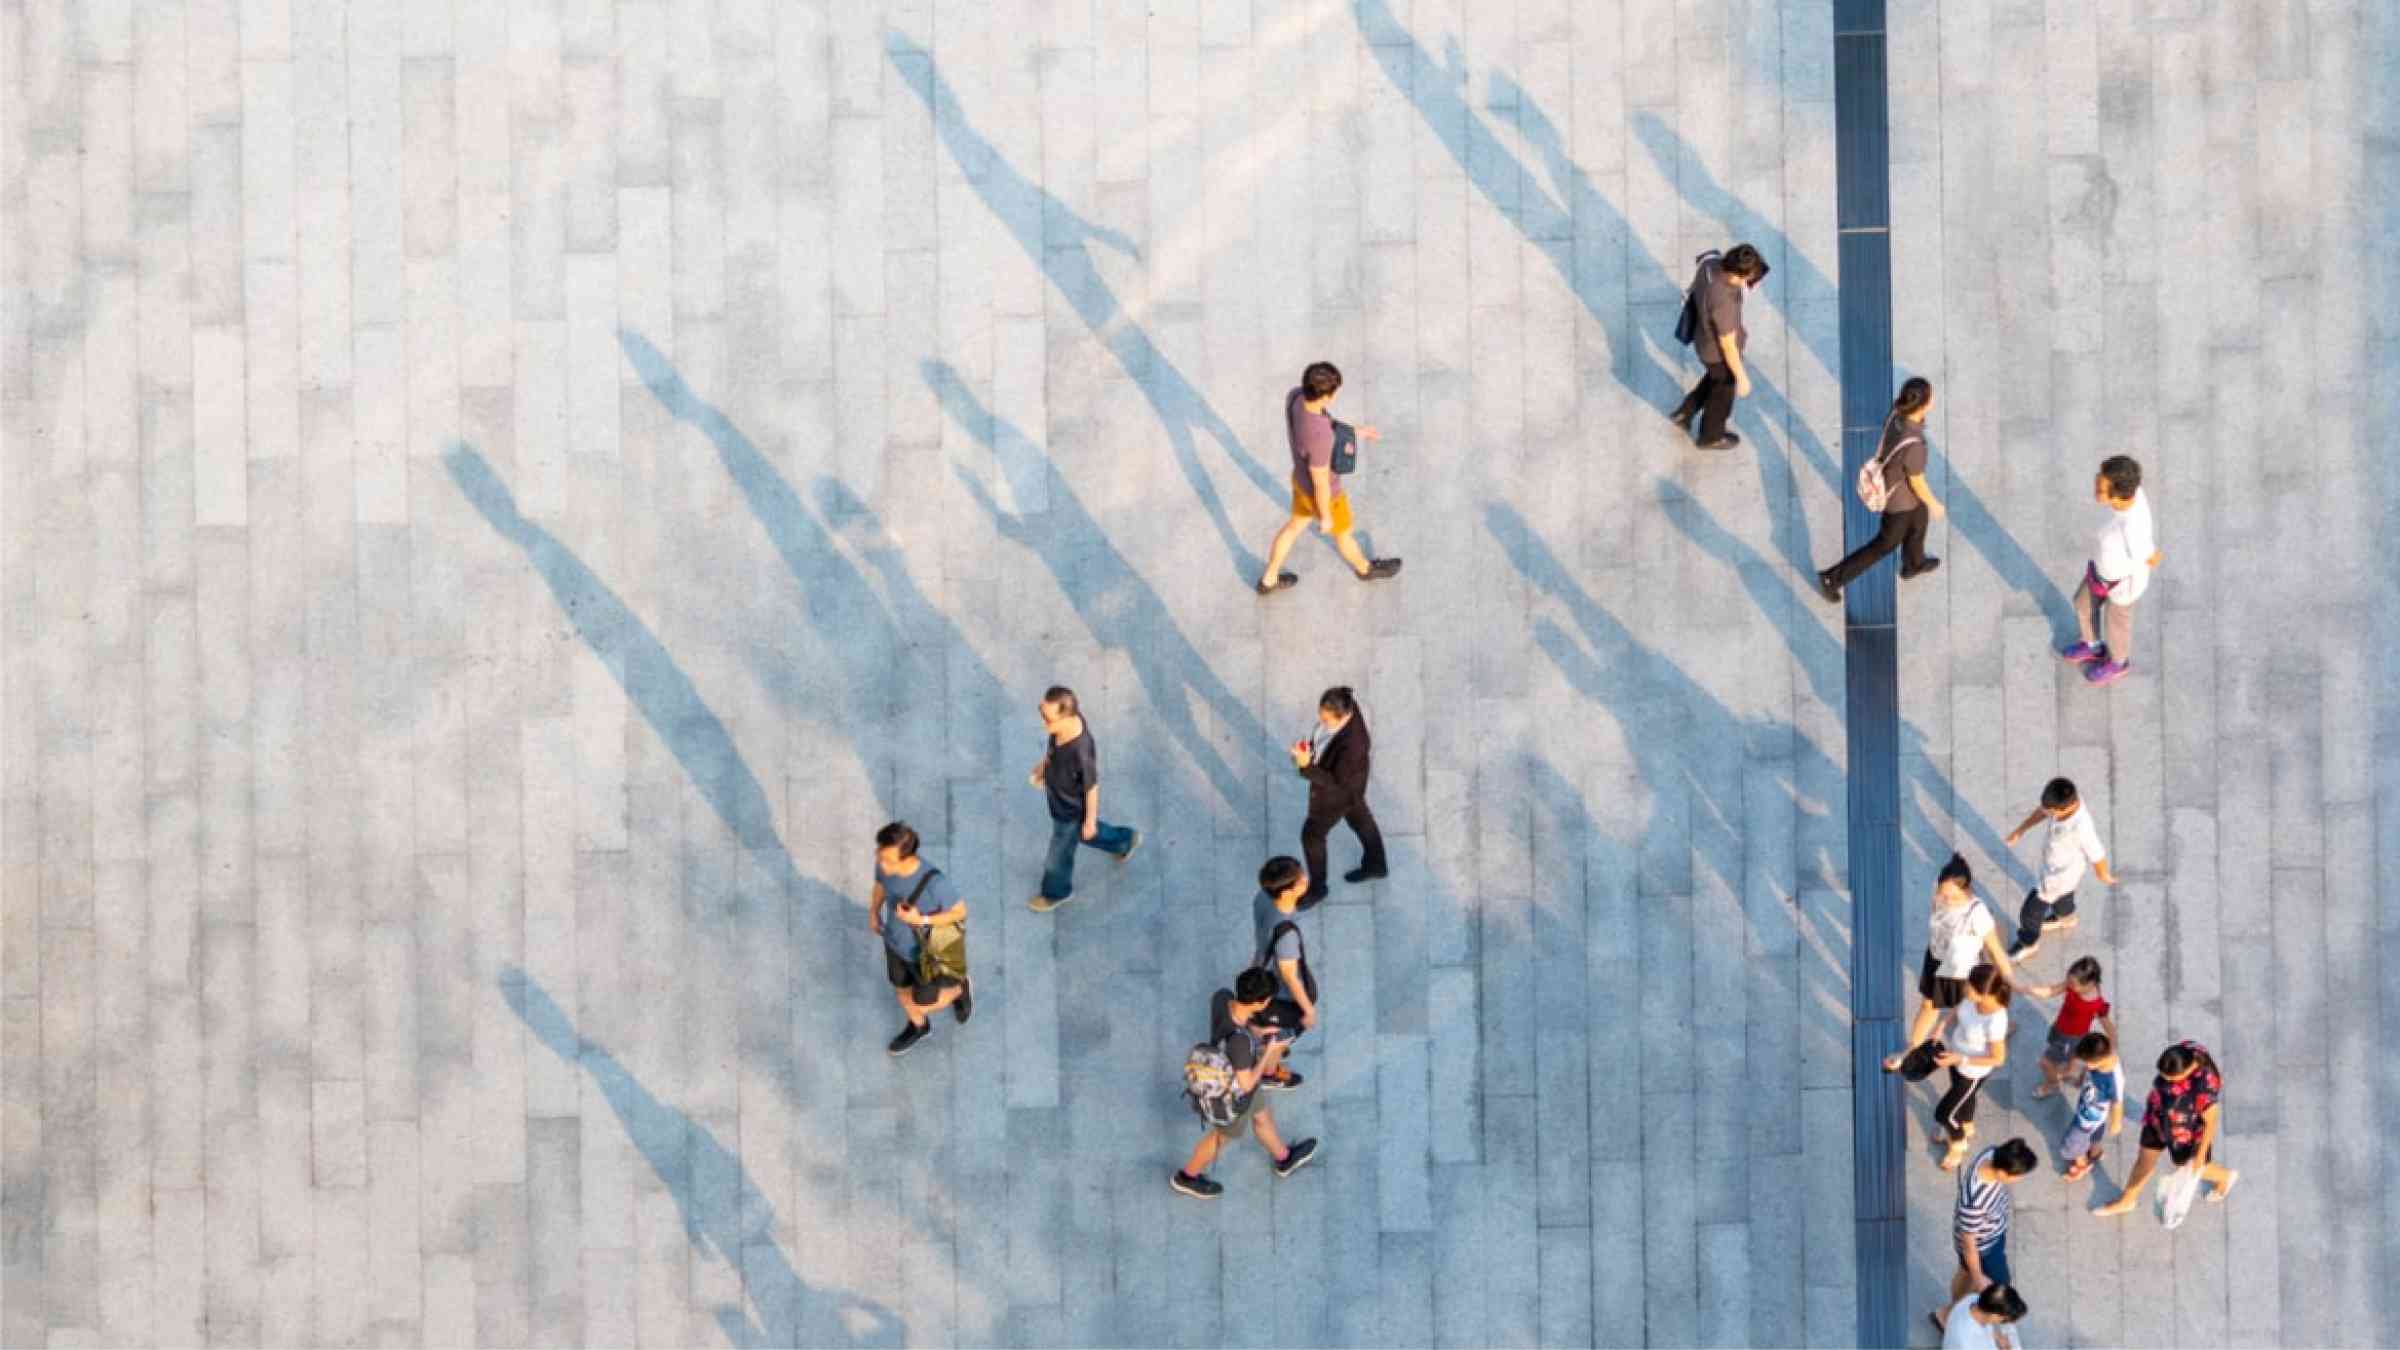 Aerial view of people walking in Japan